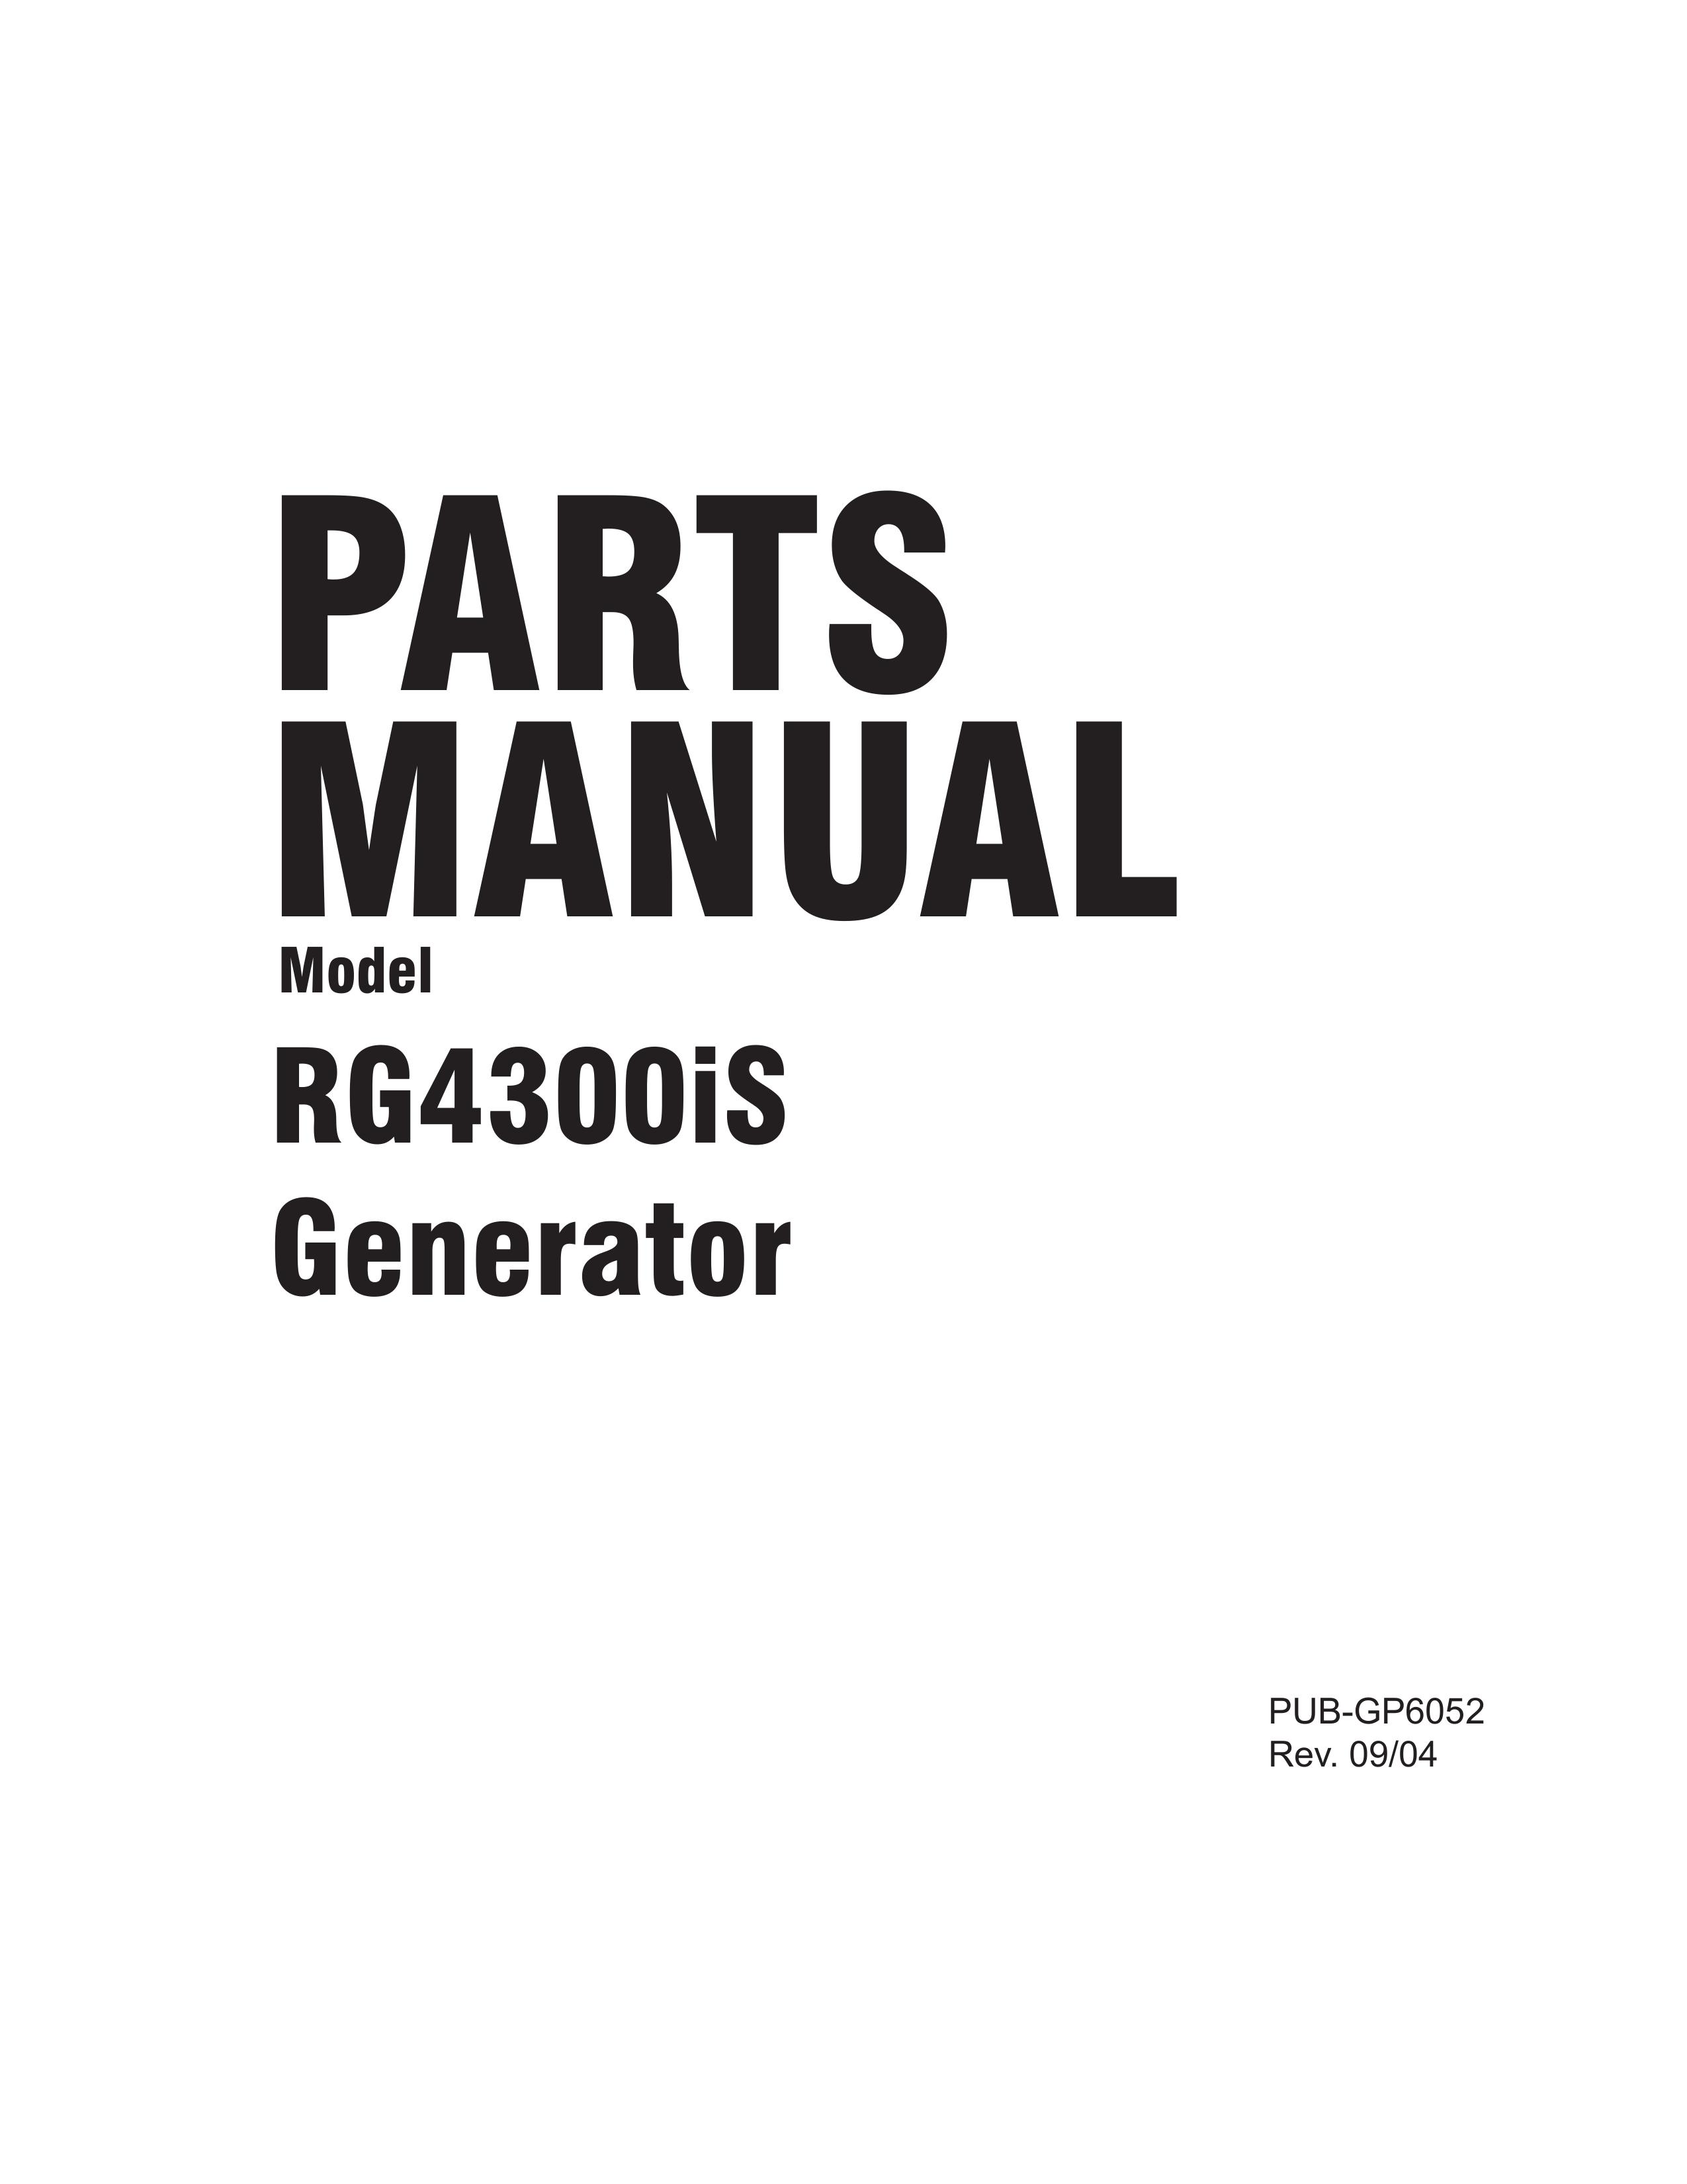 Subaru RG4300iS Portable Generator User Manual